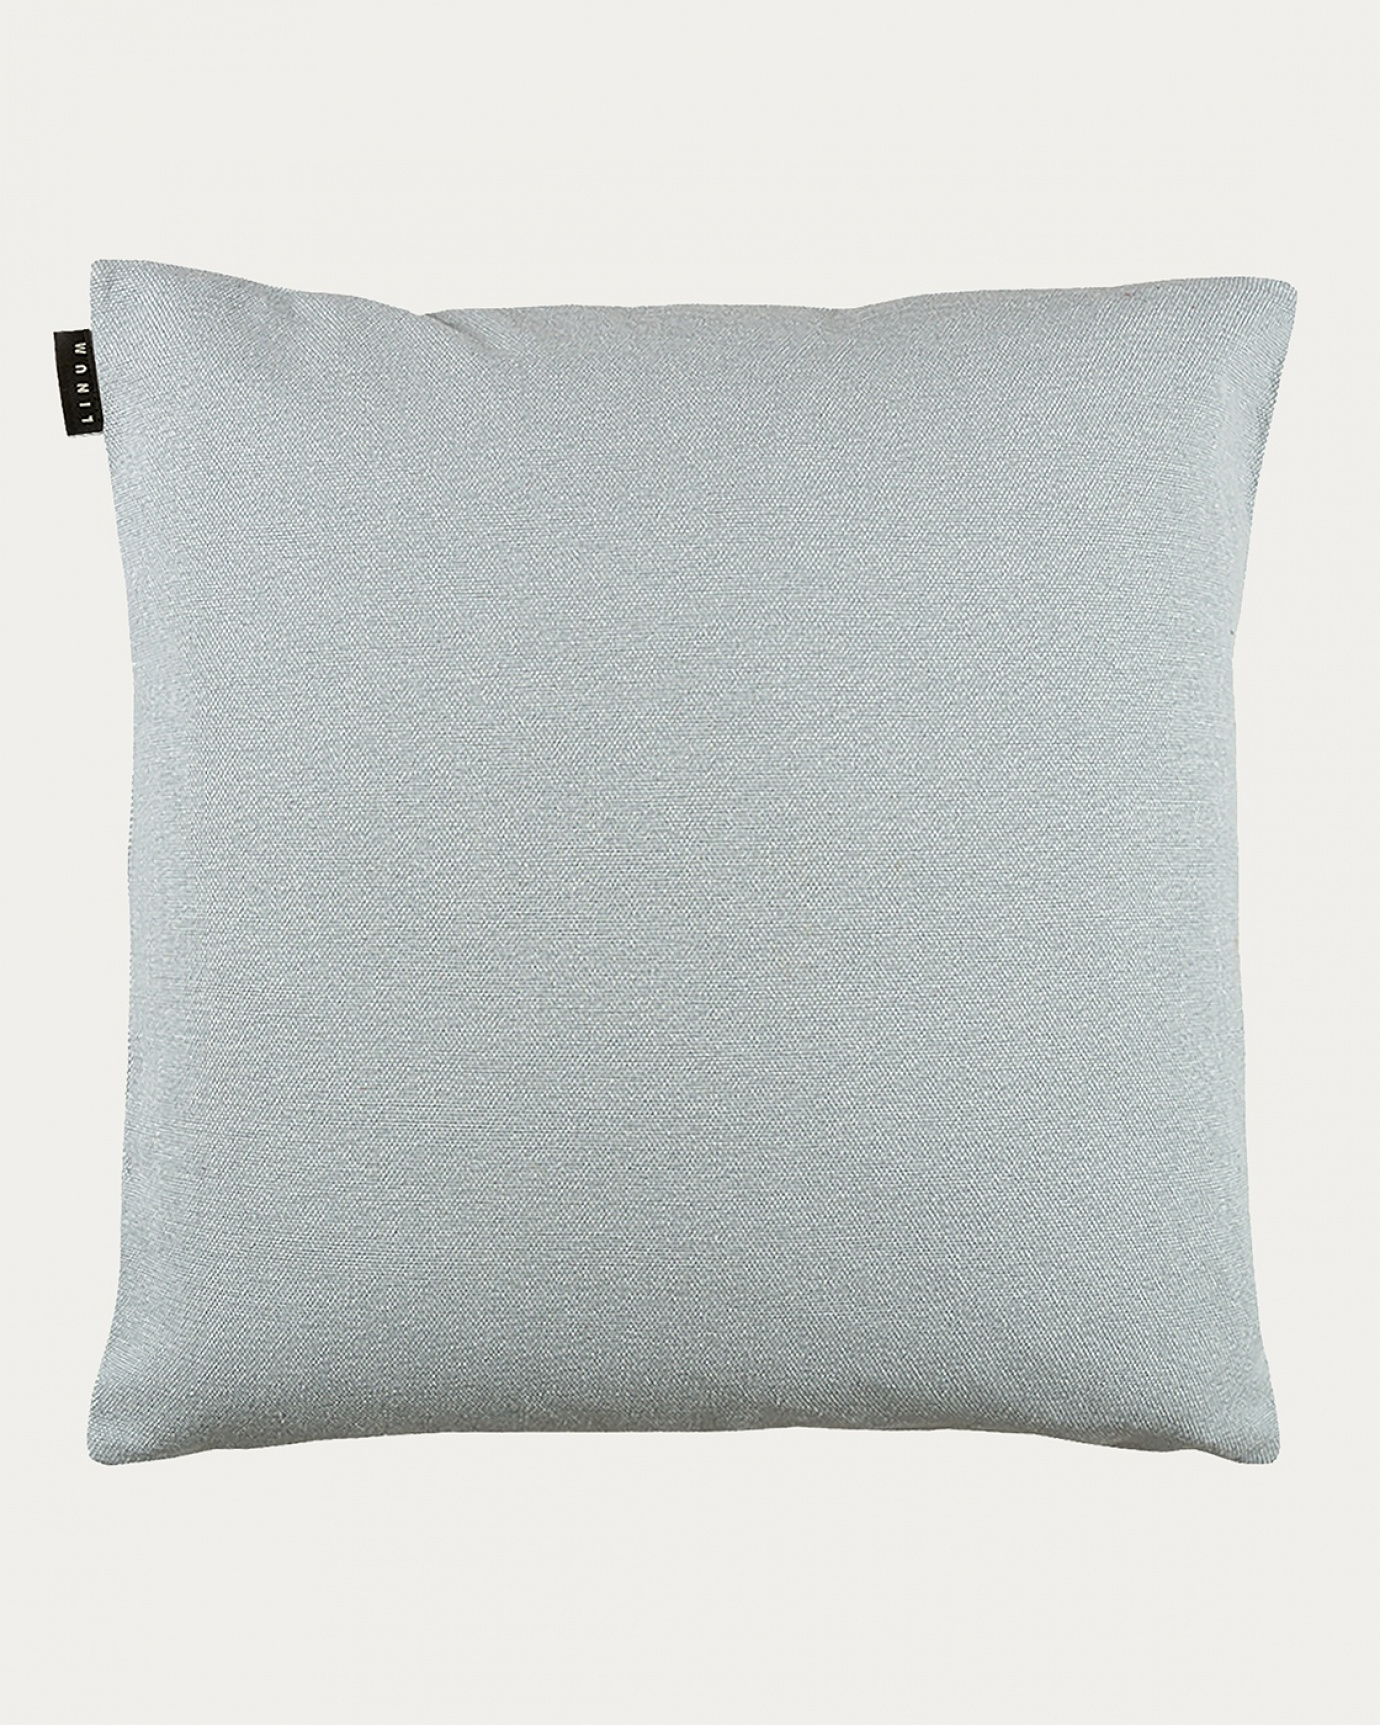 Produktbild helles graublau PEPPER Kissenhülle aus weicher Baumwolle von LINUM DESIGN. Einfach zu waschen und langlebig für Generationen. Größe 60x60 cm.